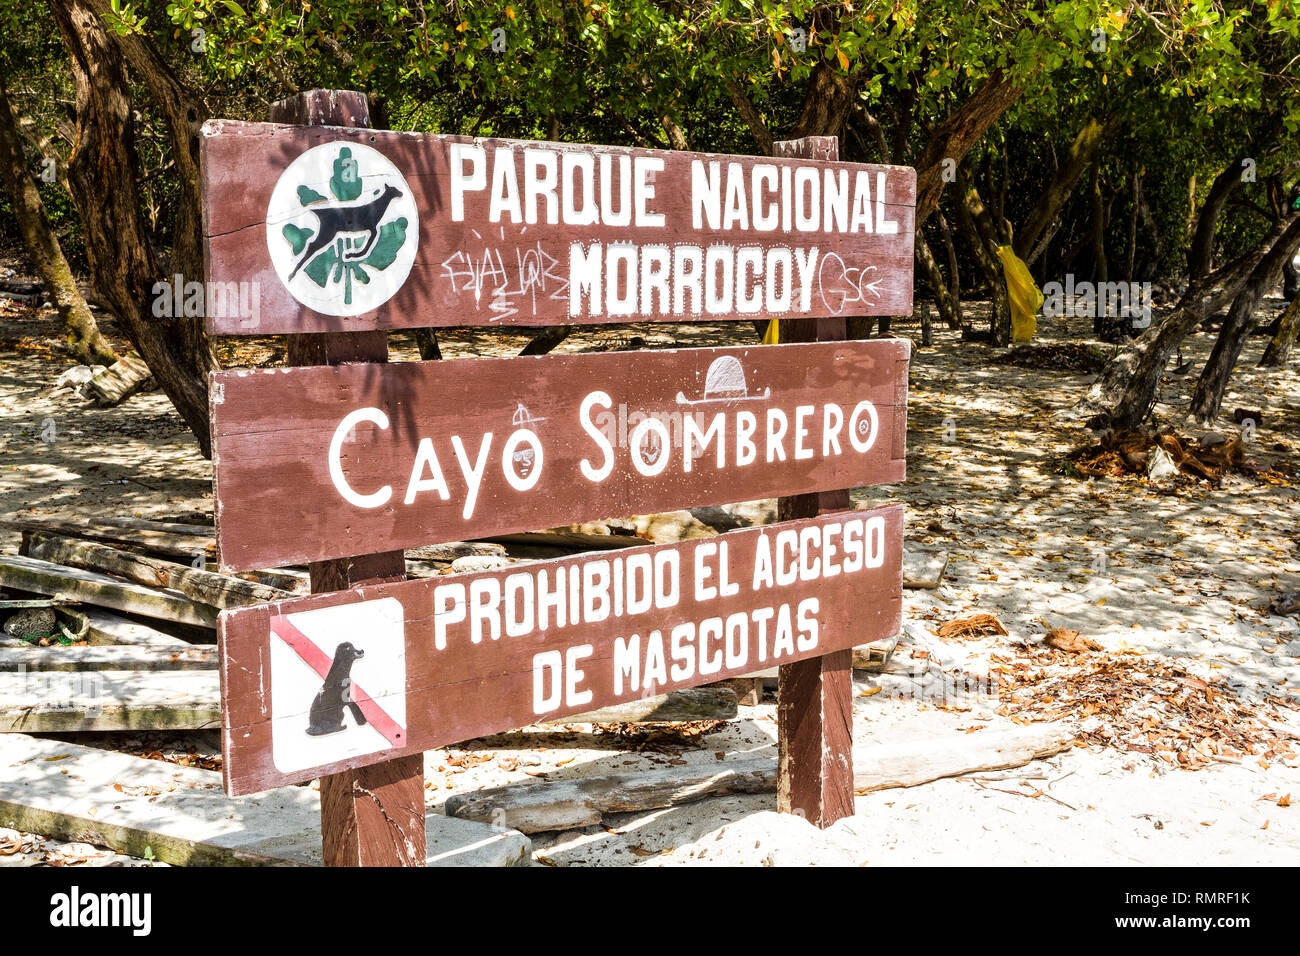 Morrocoy National Park sign in Cayo Sombrero (Sombrero Island). Chichiriviche, Falcon State, Venezuela. Stock Photo